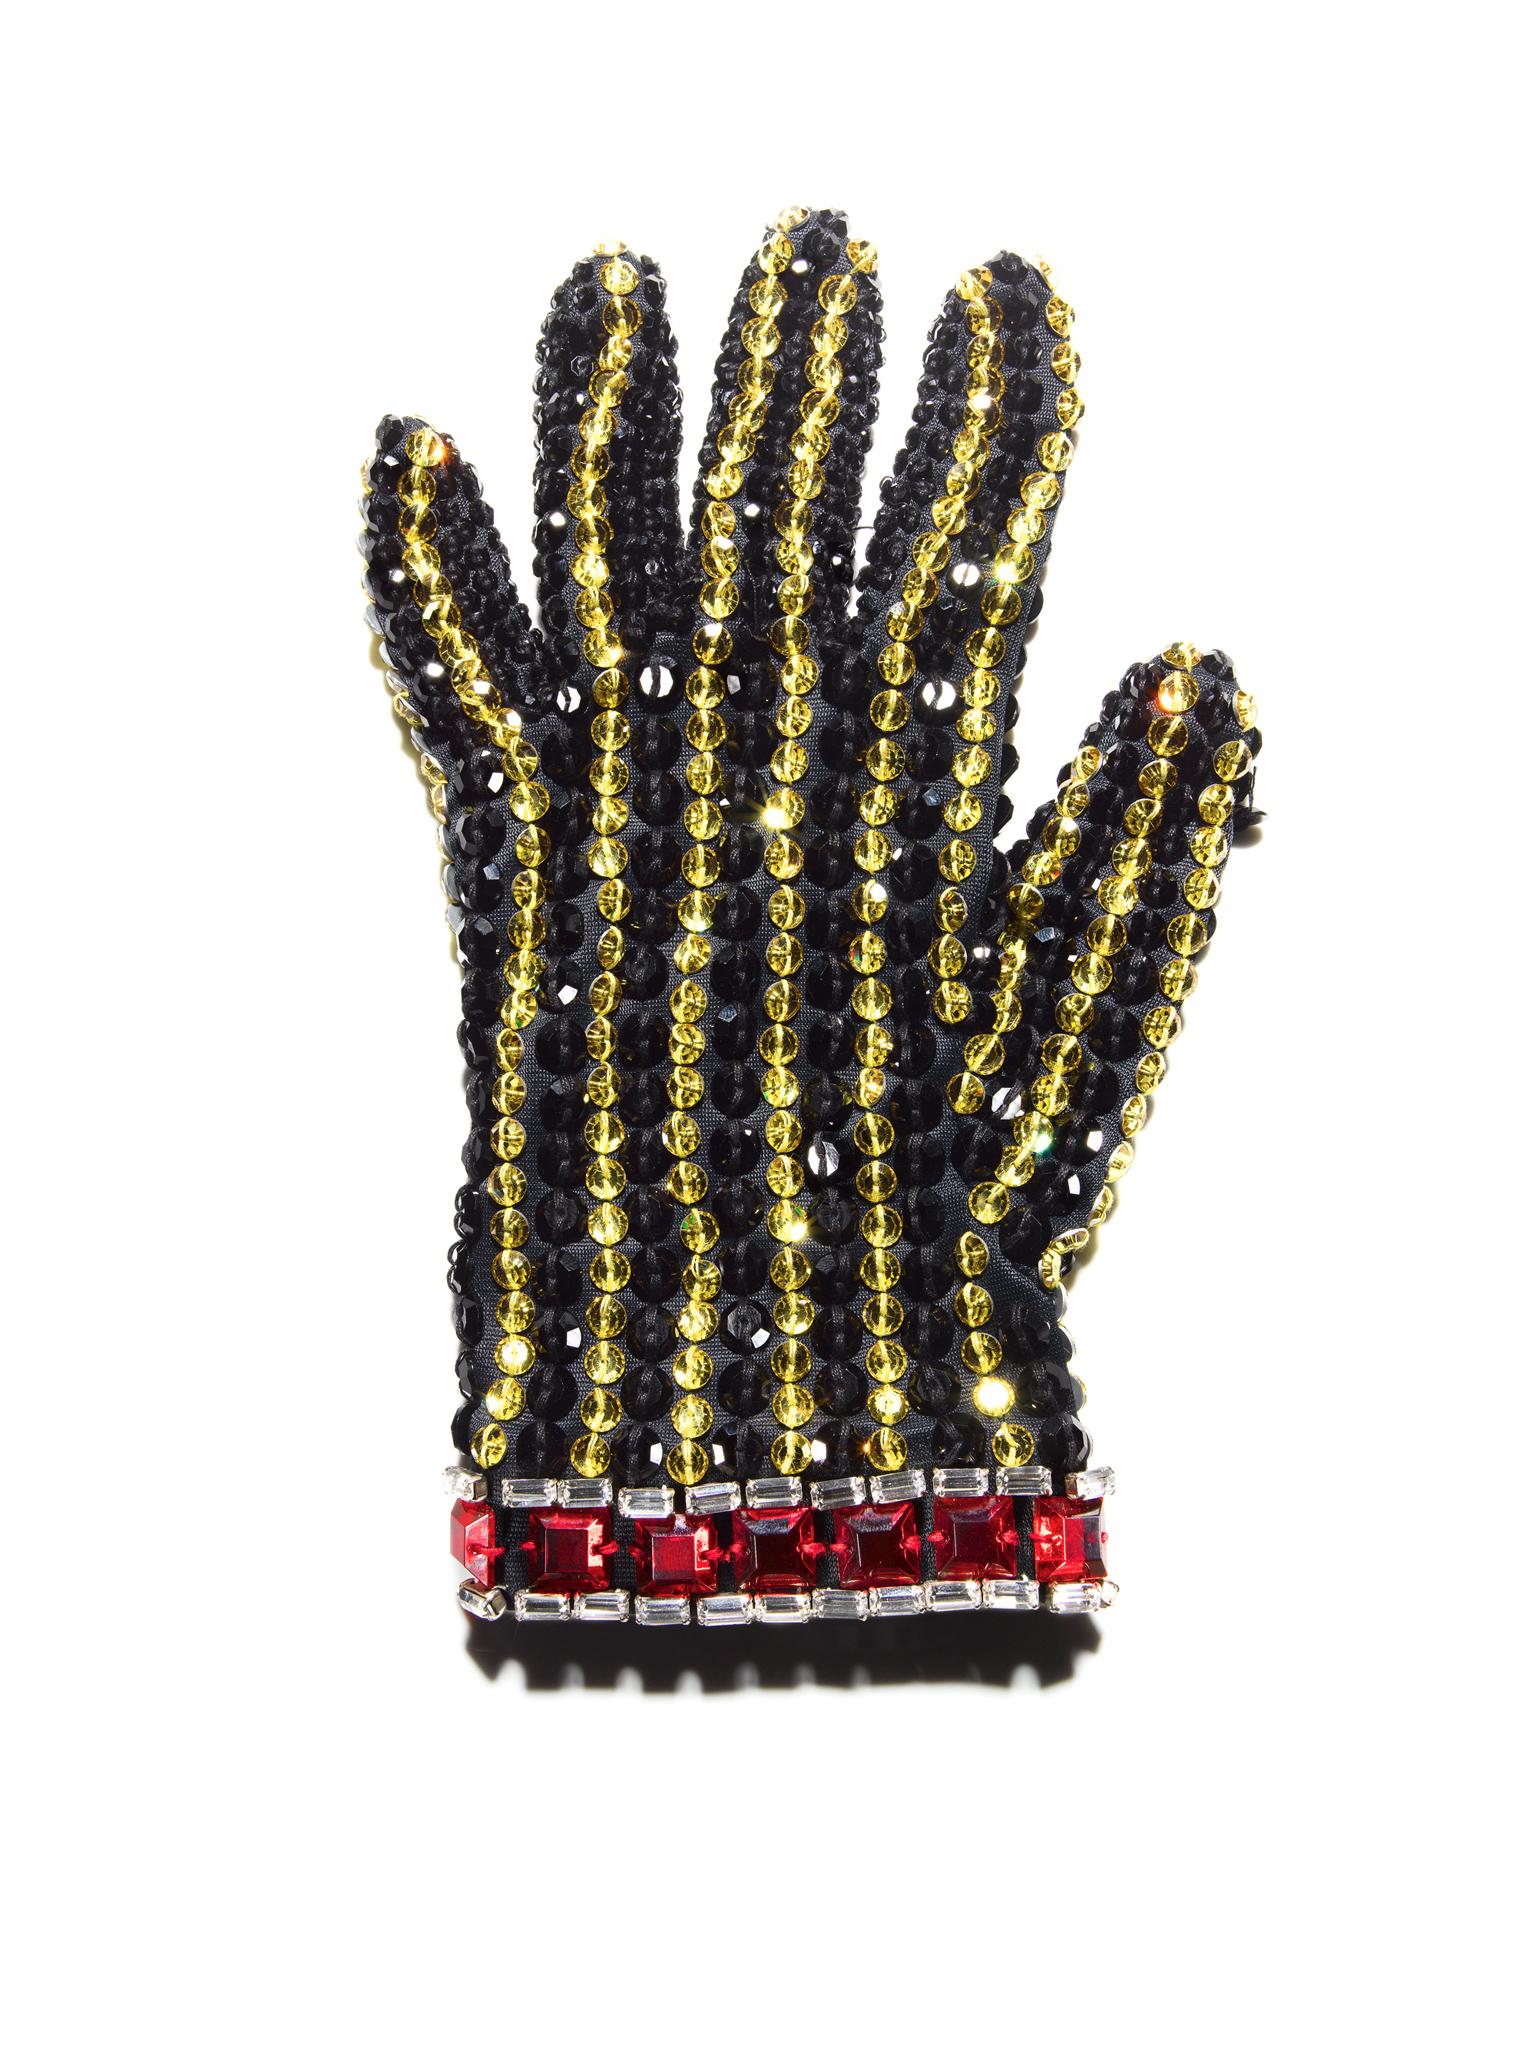 Tom Schierlitz Color Photograph – Schwarzer Handschuh ( Michael Jackson ) 40"" x 30"""